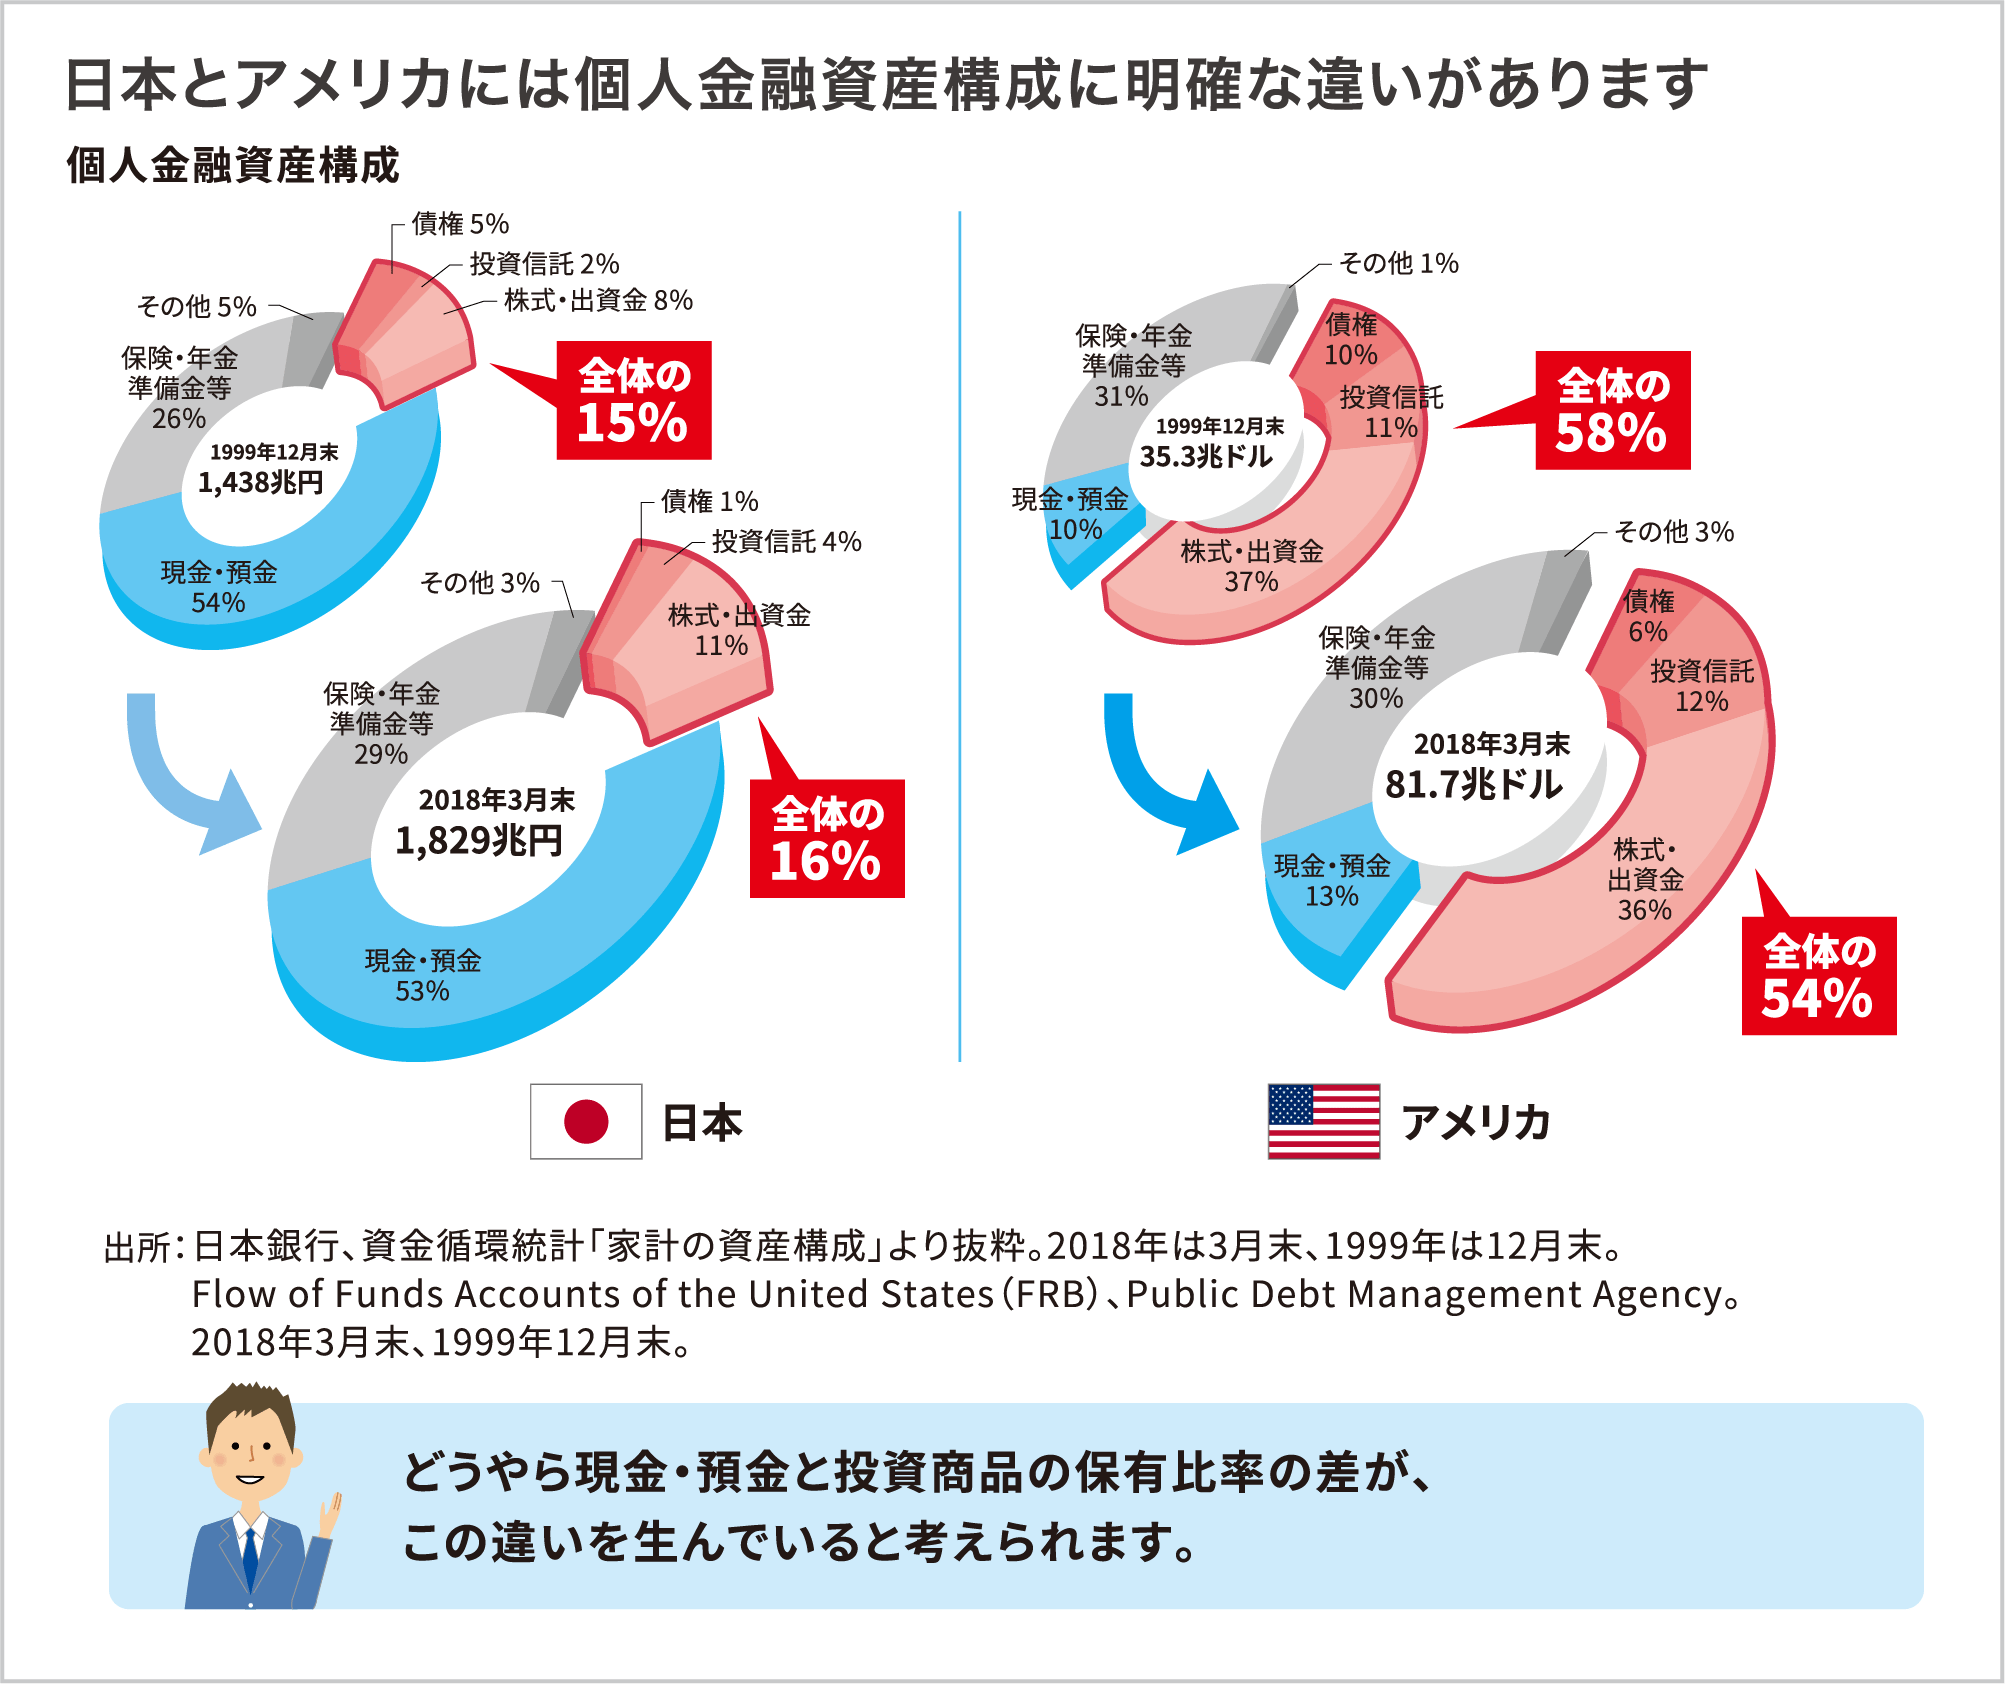 日本とアメリカには個人金融資産構成に明確な違いがあります